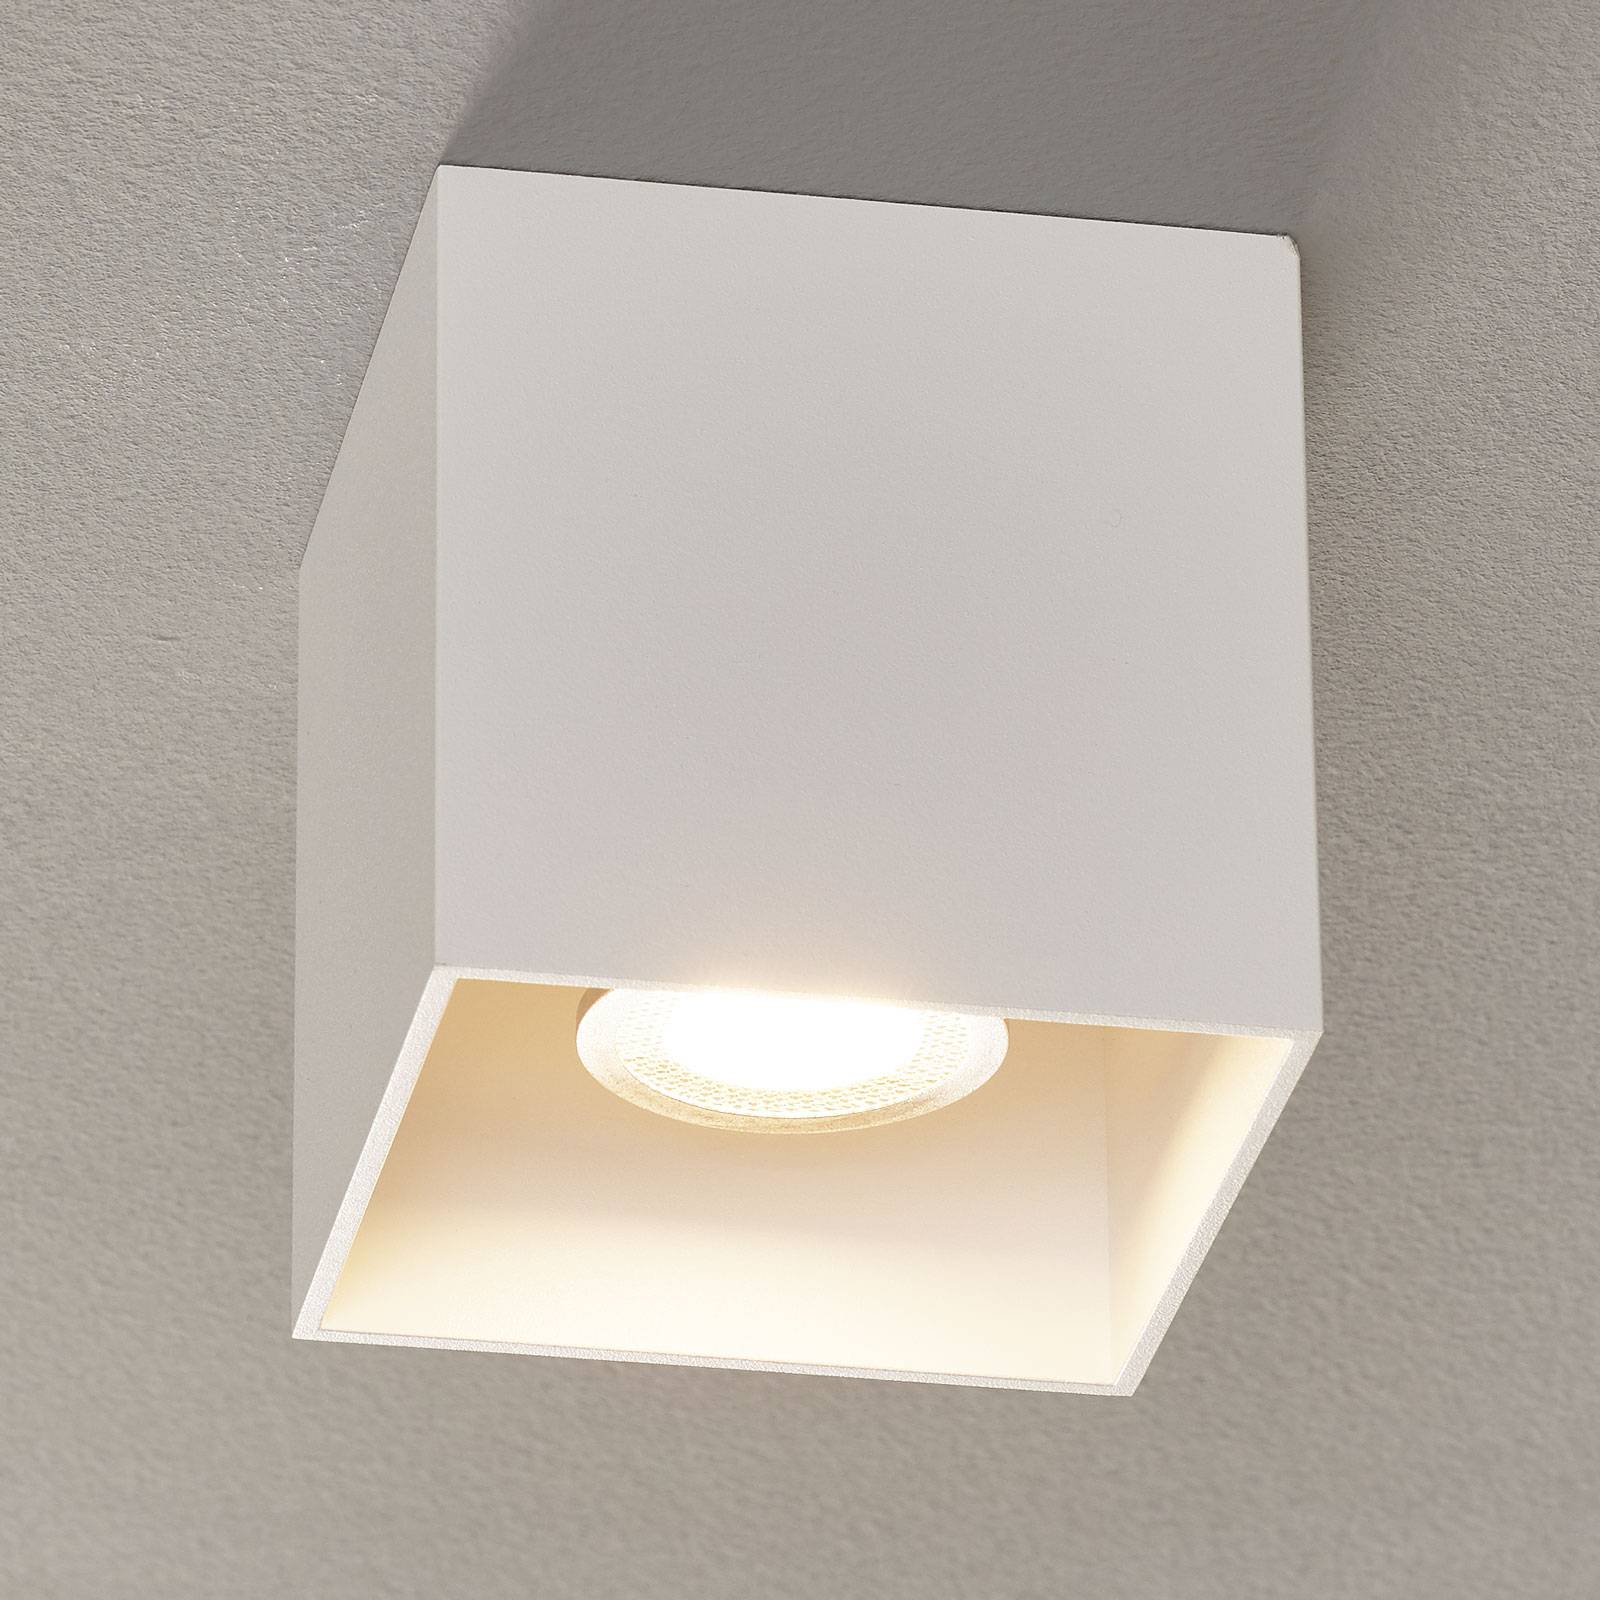 WEVER & DUCRÉ Box 1.0 PAR16 loftlampe hvid